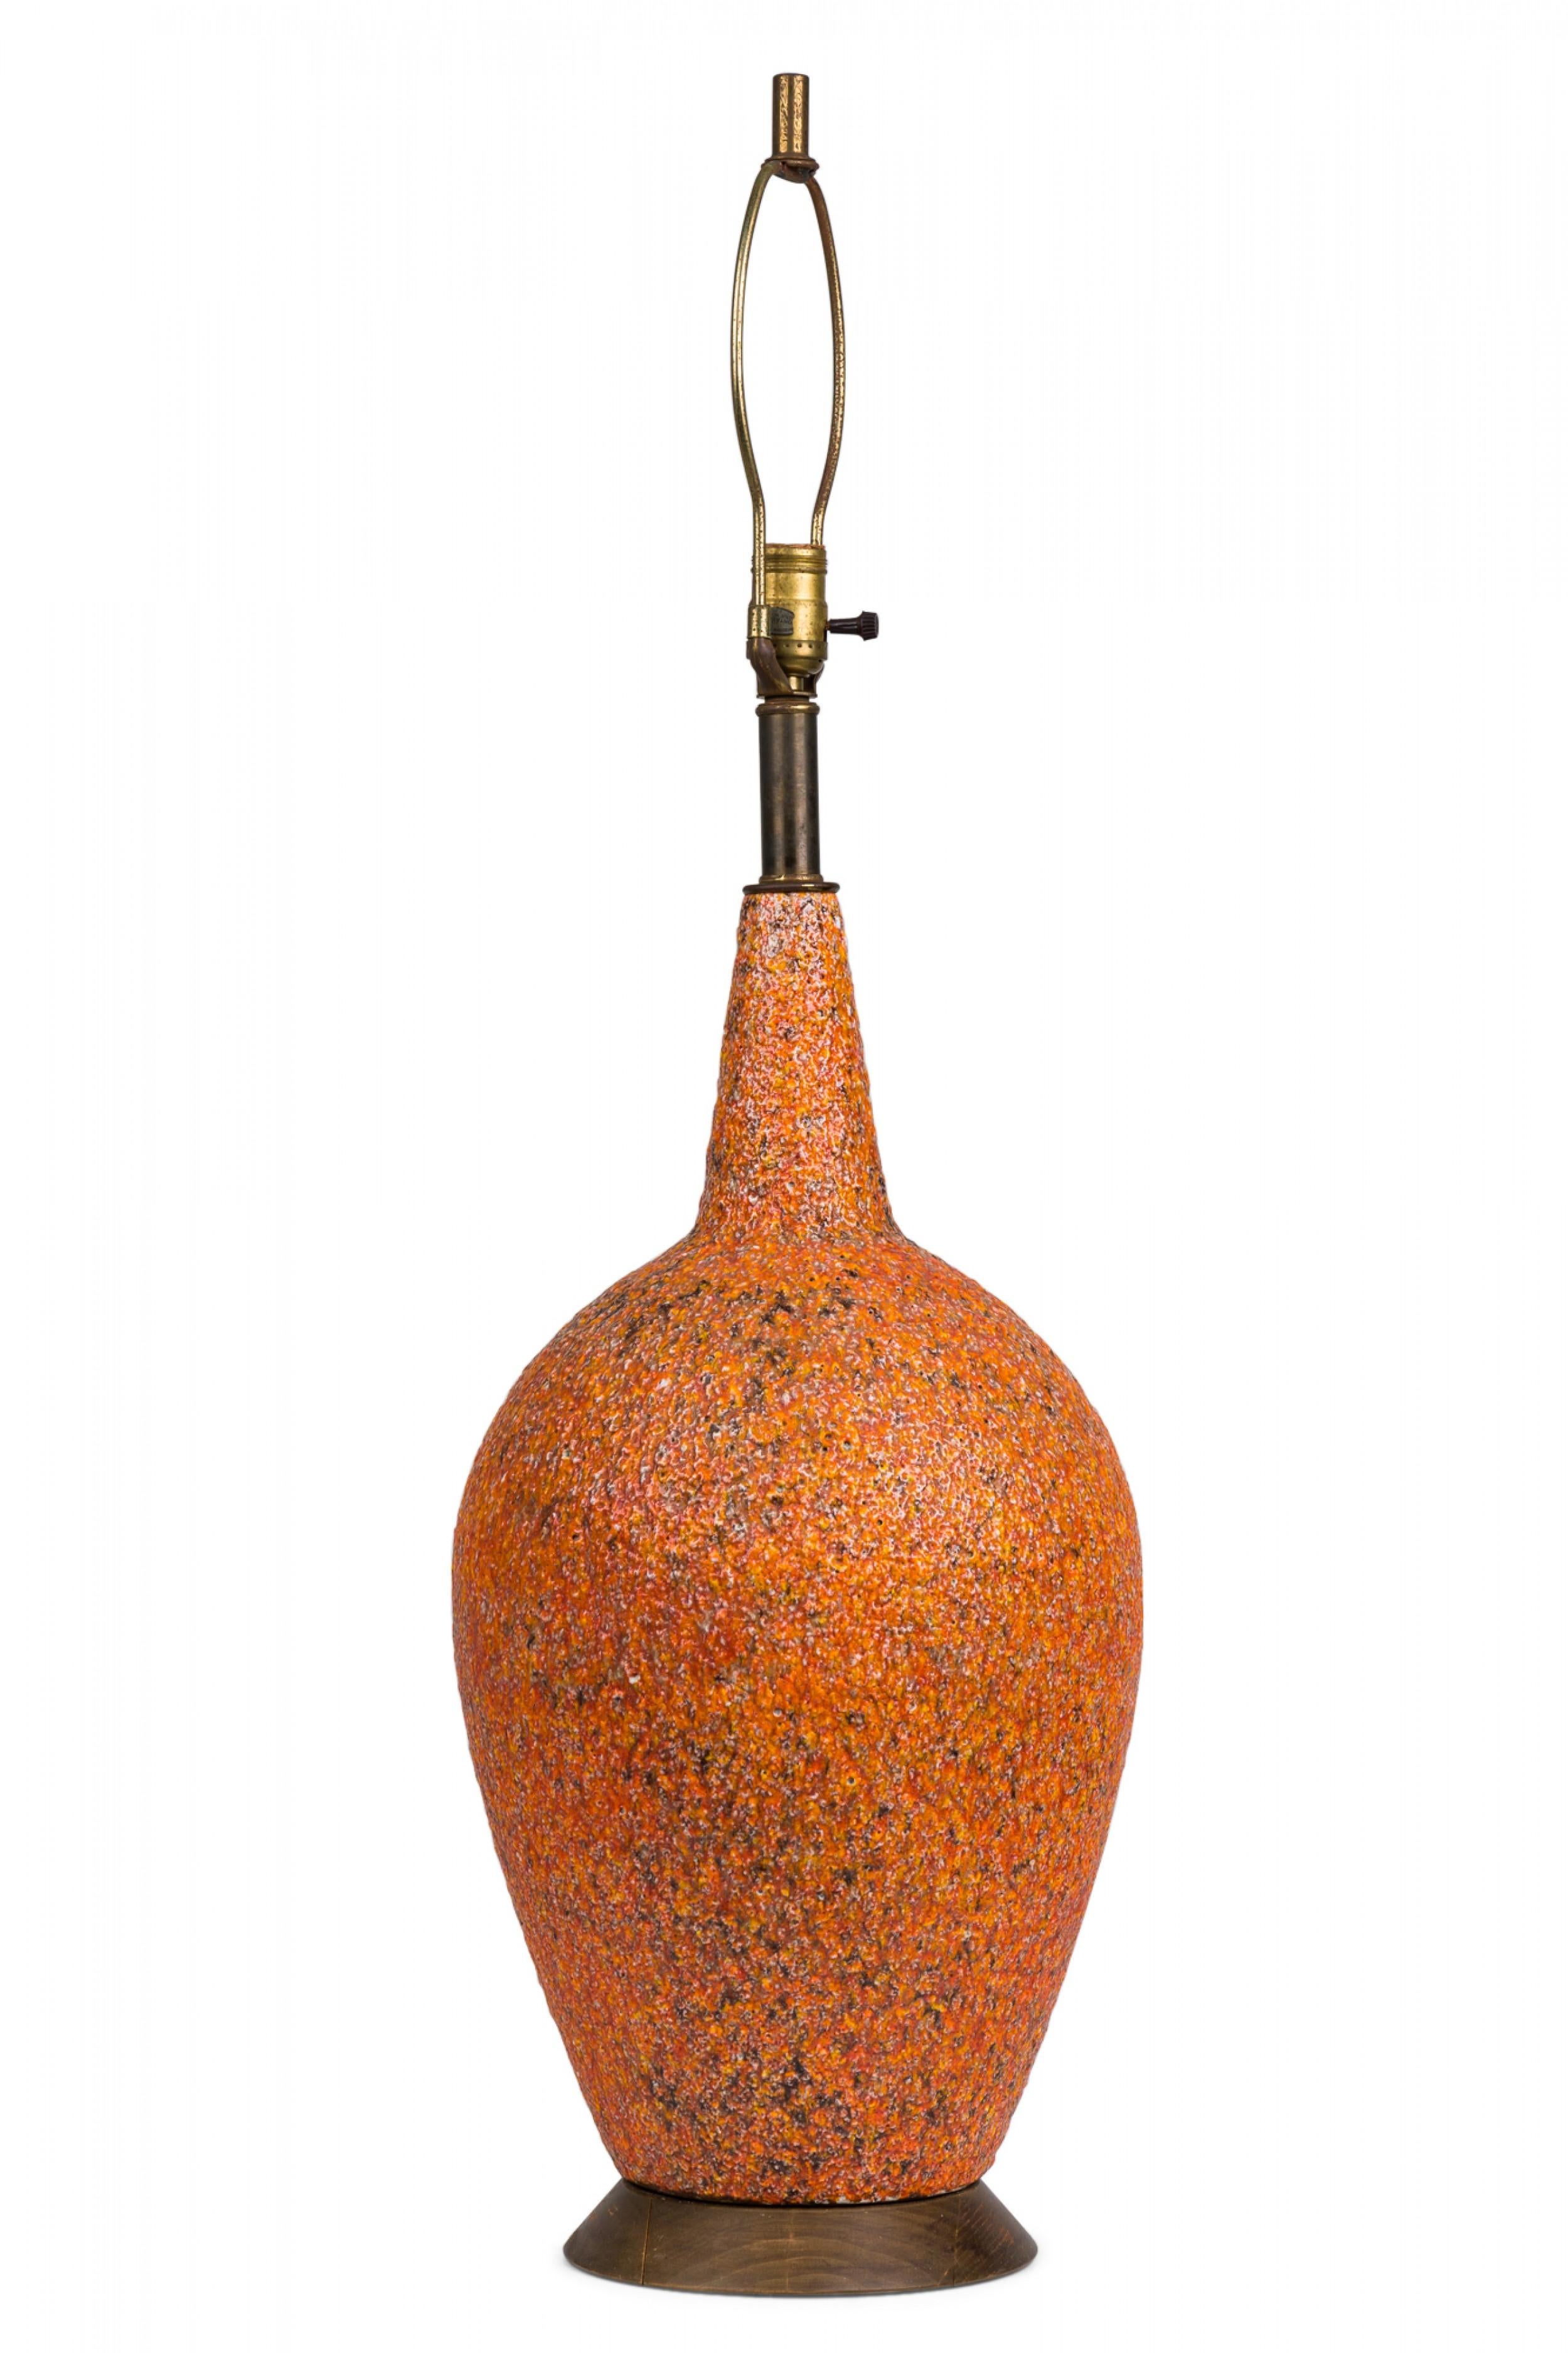 PAIRE de lampes de table en céramique américaine du milieu du siècle, de forme ovoïde effilée, cuites dans une glaçure de lave brillante orange texturée, se rétrécissant vers le haut, la lampe à glaçure plus foncée ayant besoin d'une nouvelle